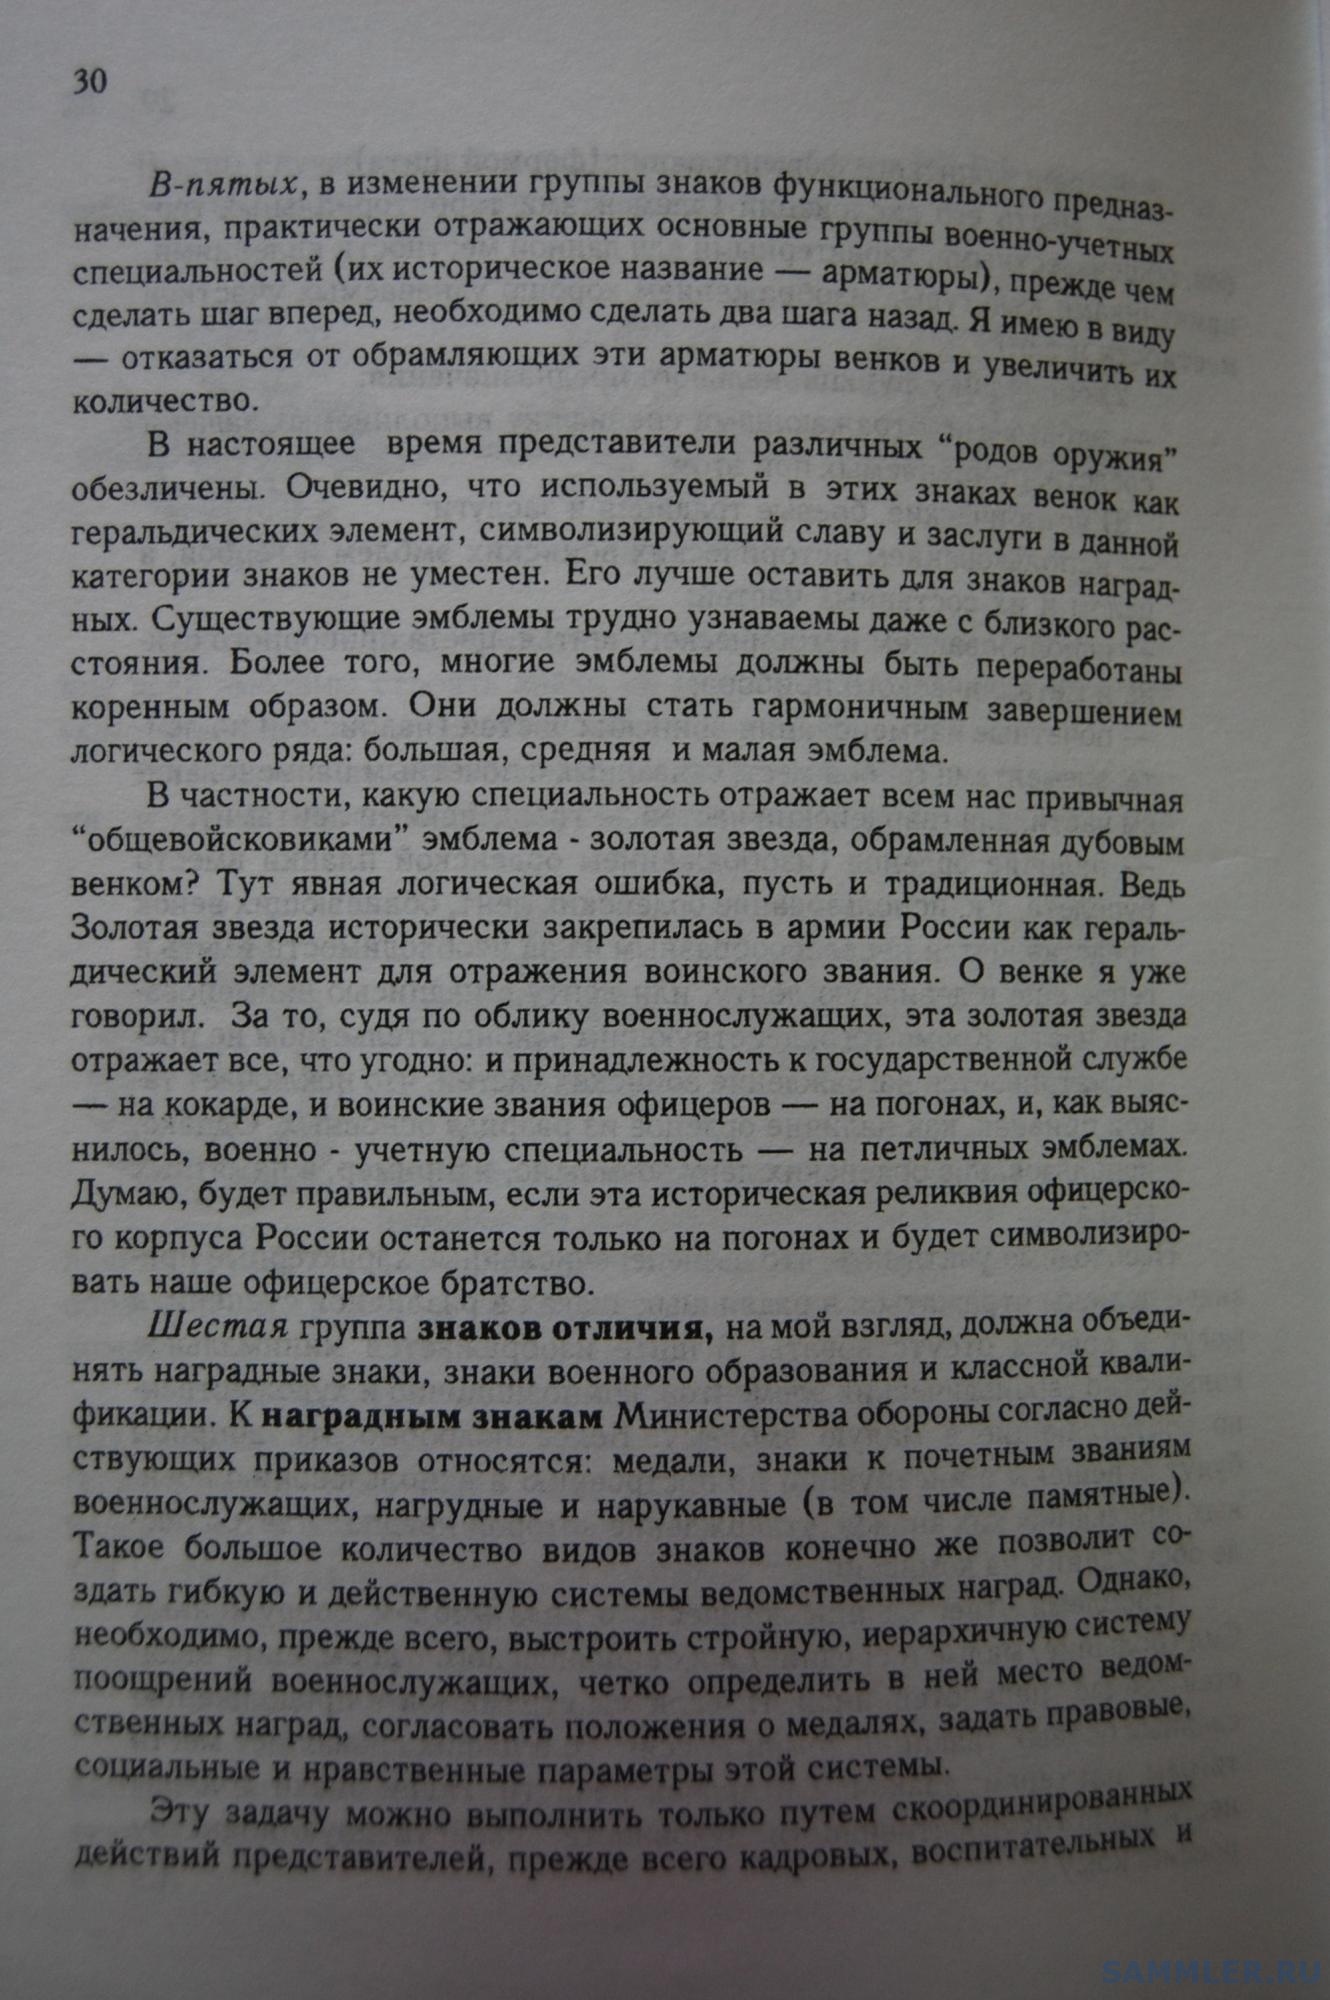 Кузнецов О.В. - Геральдическое обеспечение ВС РФ. М., 1999. С. 30.JPG